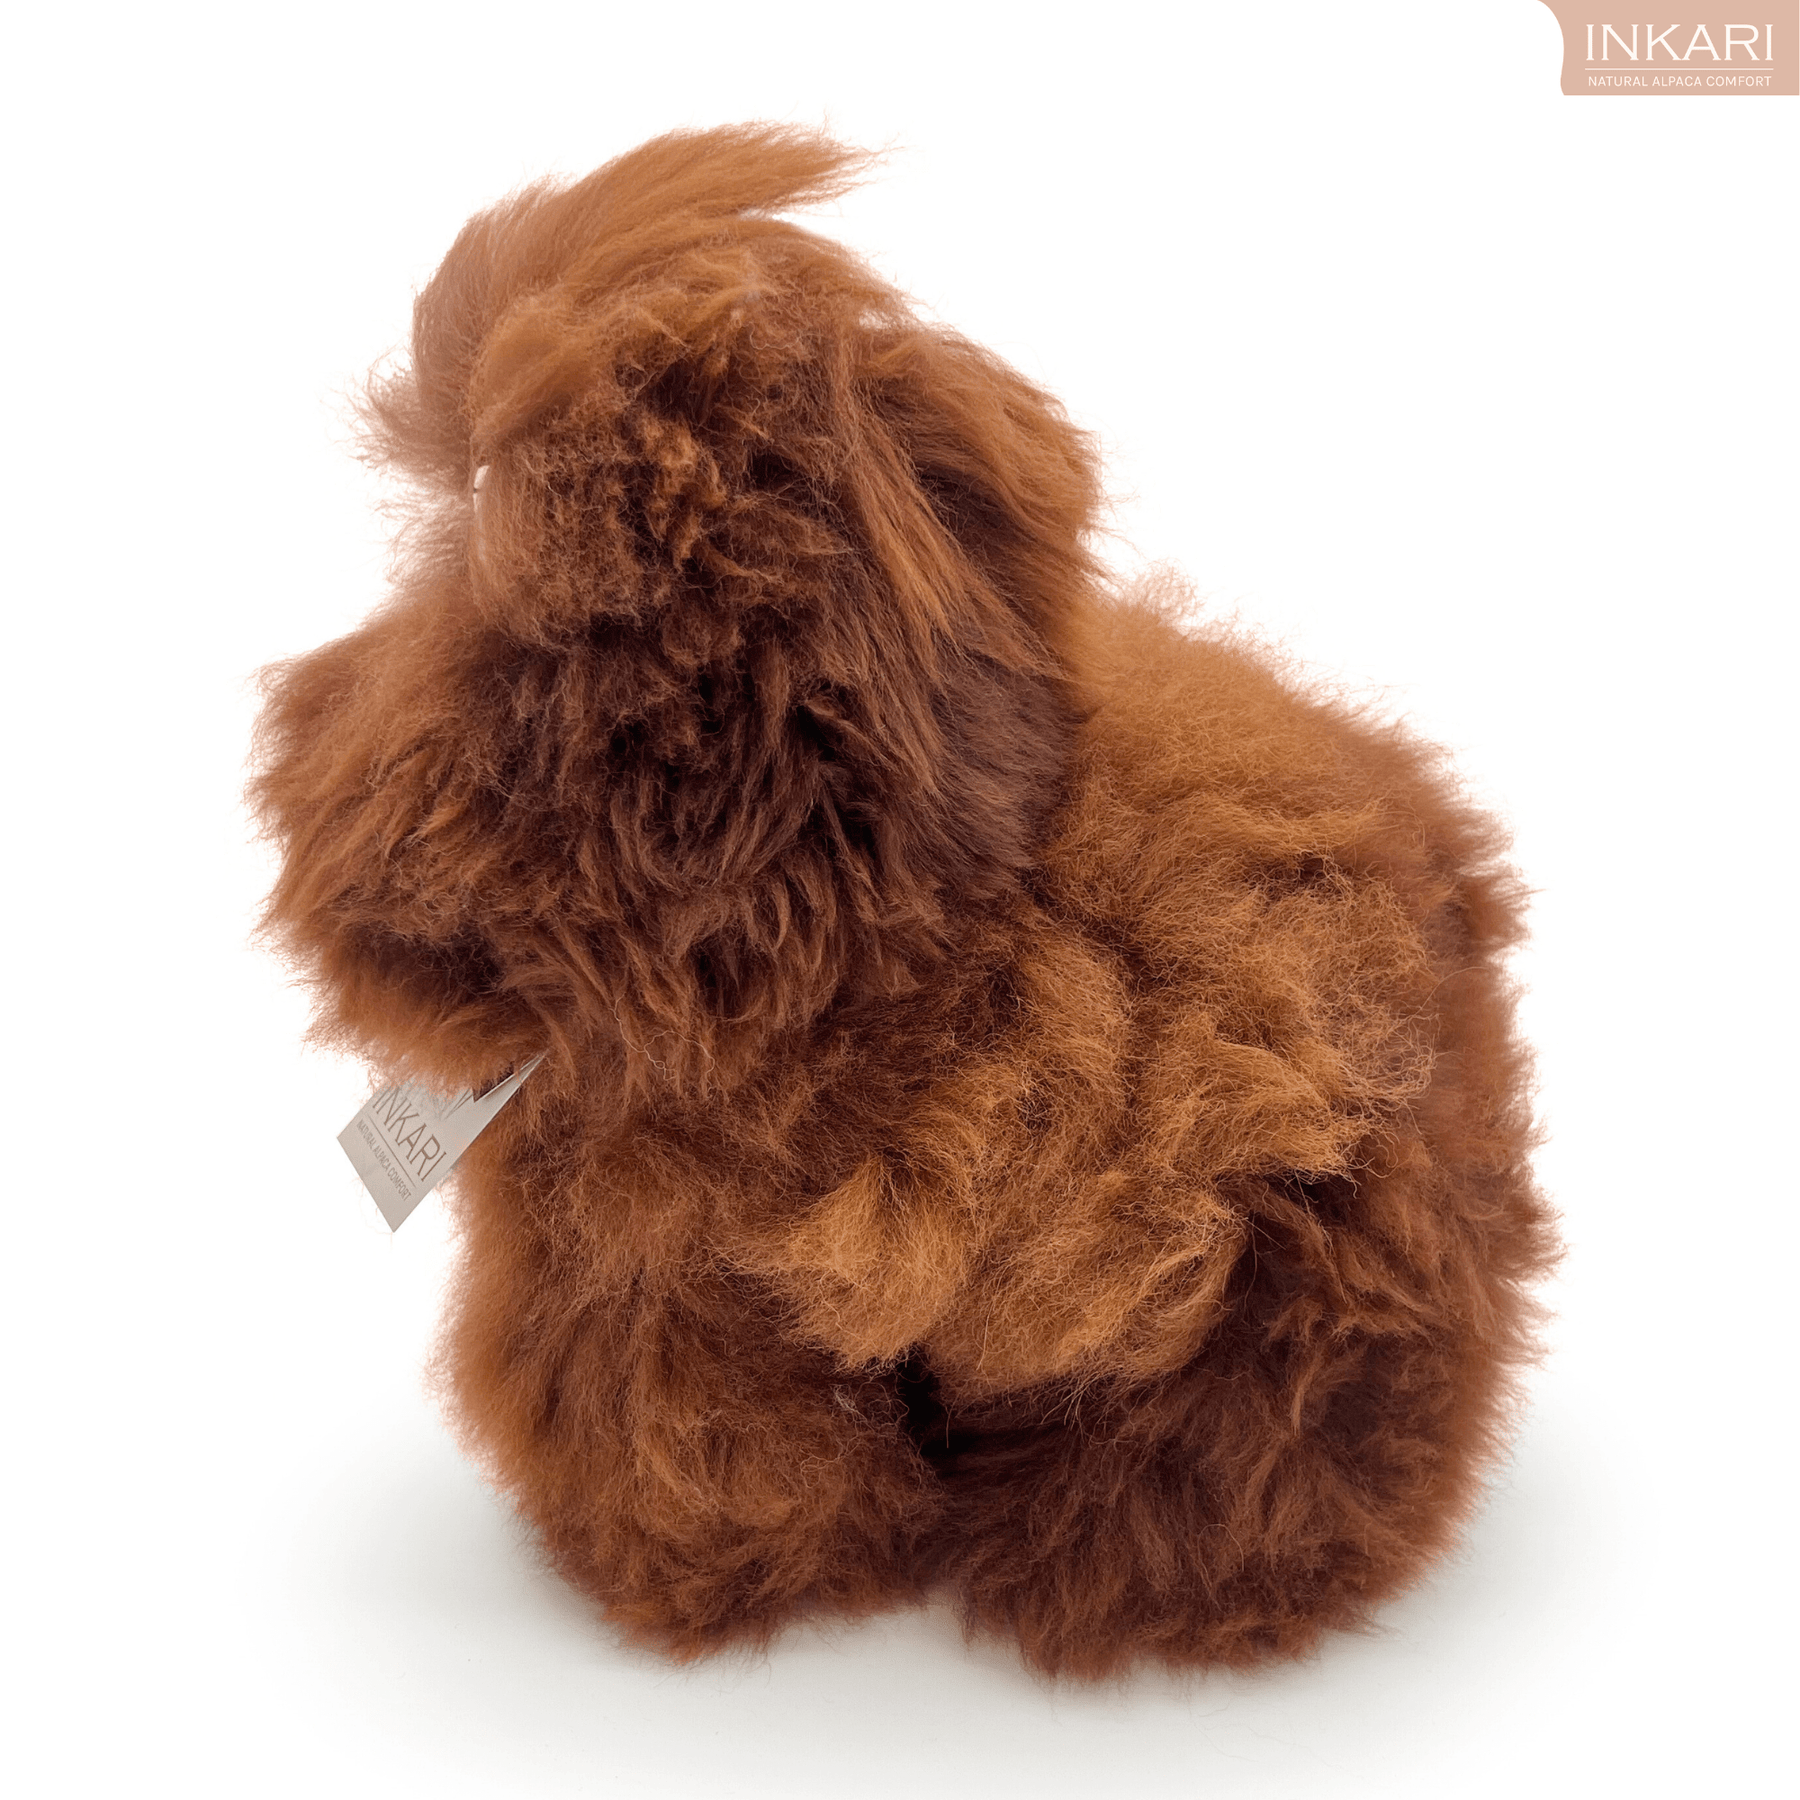 Monstruos de pelusa - Mediano (32 cm) - Peluche de alpaca